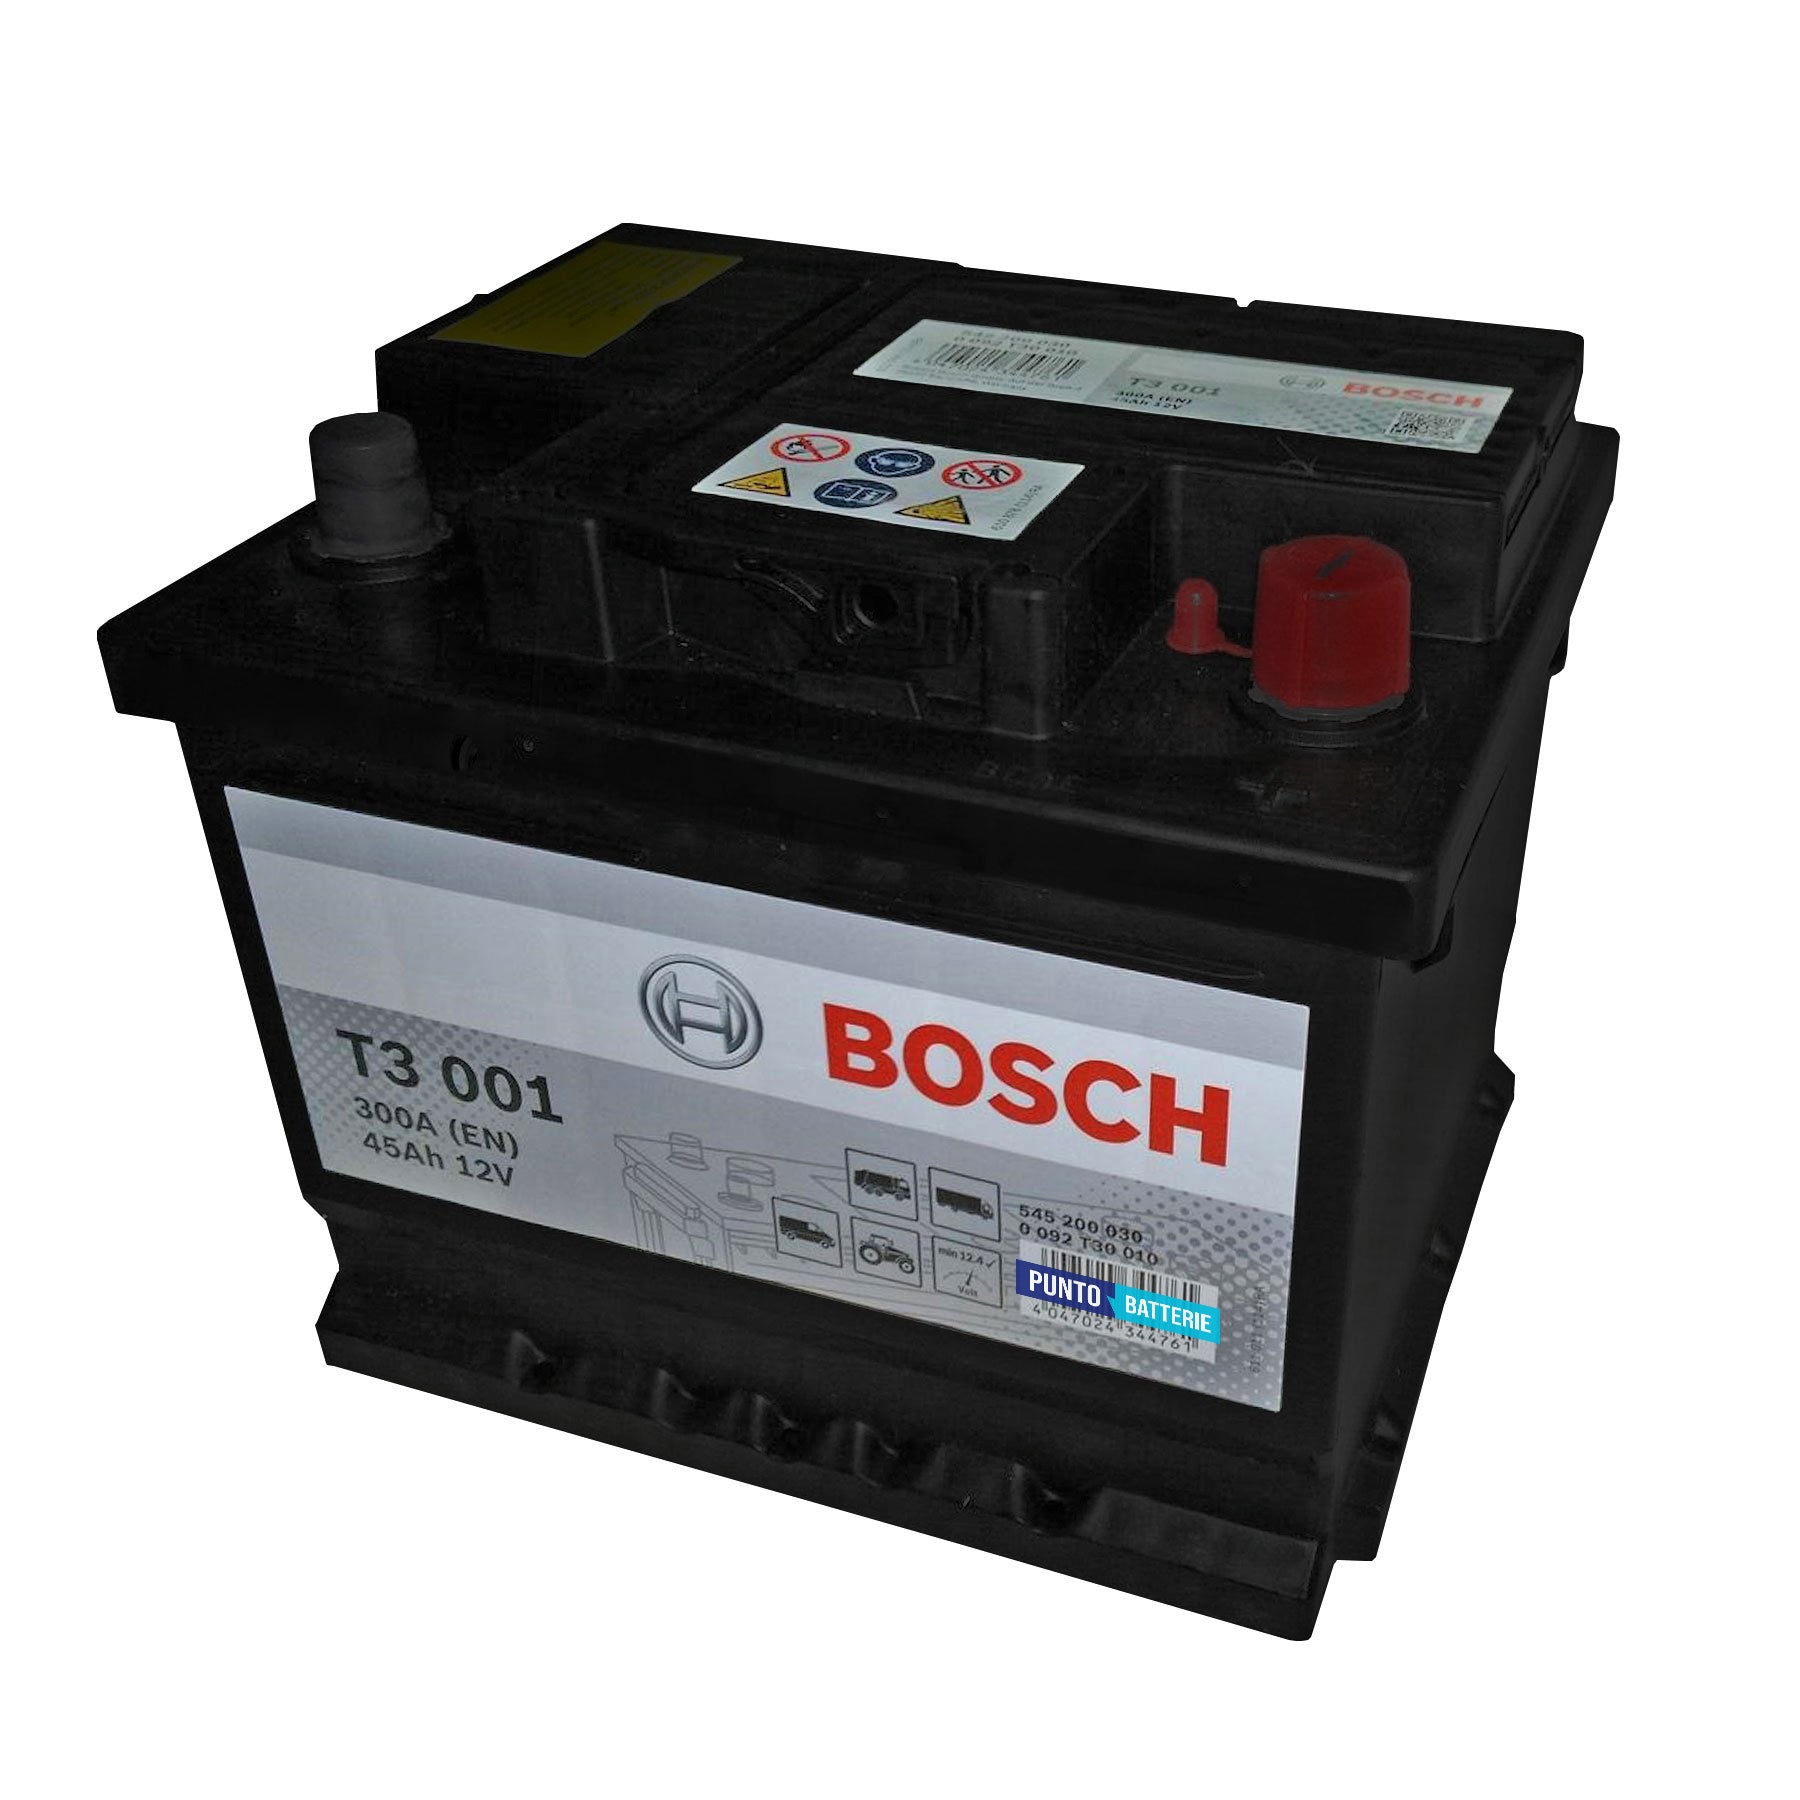 Batteria originale Bosch T3 T3001, dimensioni 207 x 175 x 175, polo positivo a destra, 12 volt, 45 amperora, 300 ampere. Batteria per camion e veicoli pesanti.